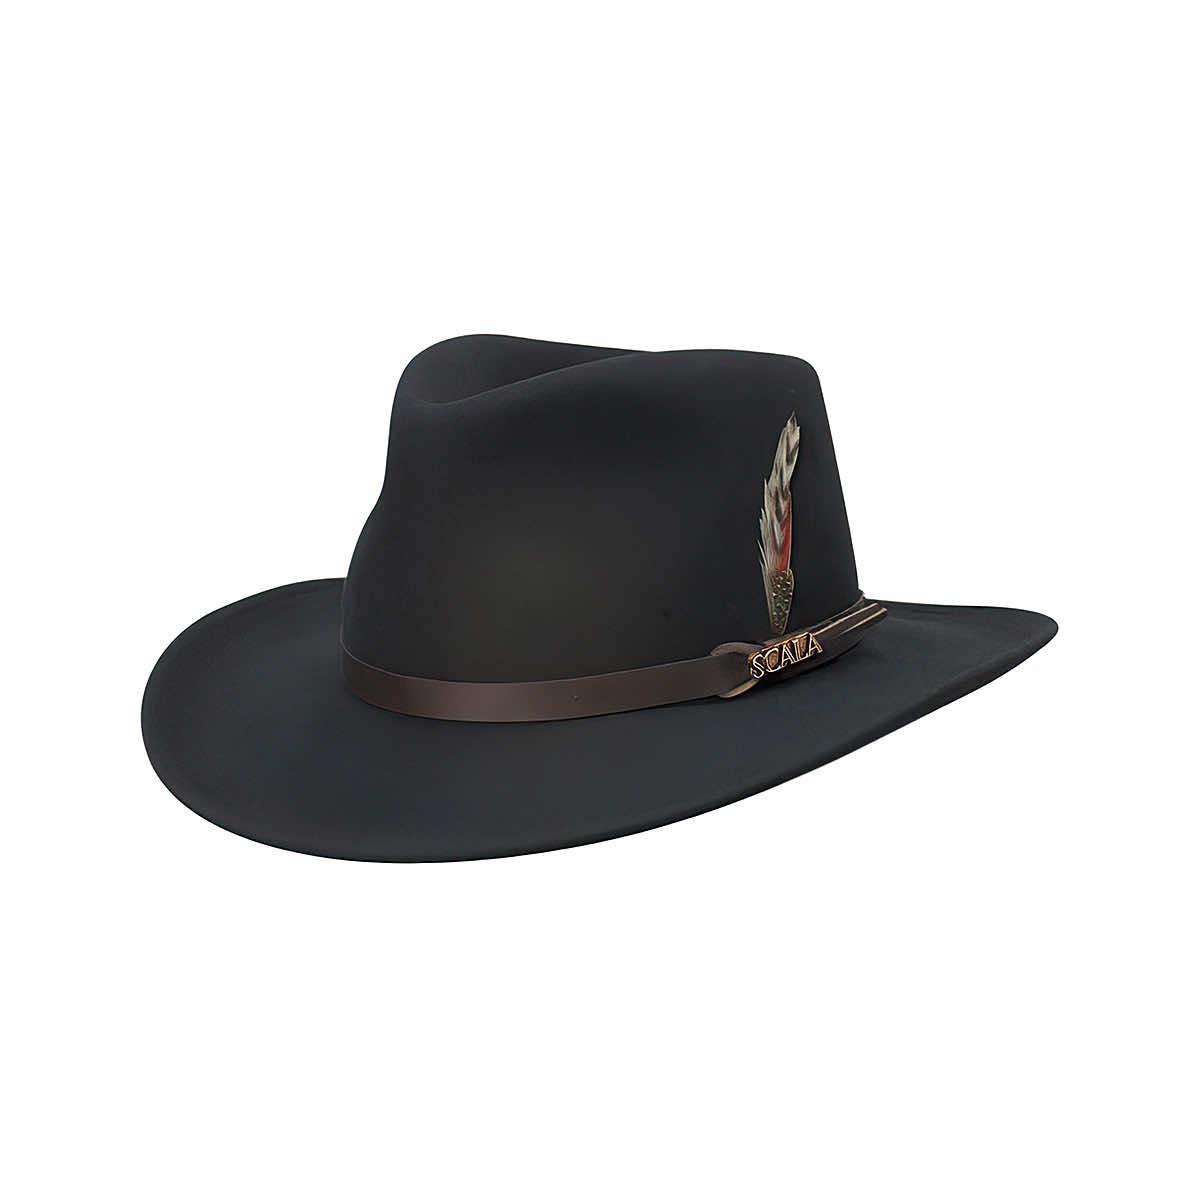 Men's Dakota Wool Felt Hat